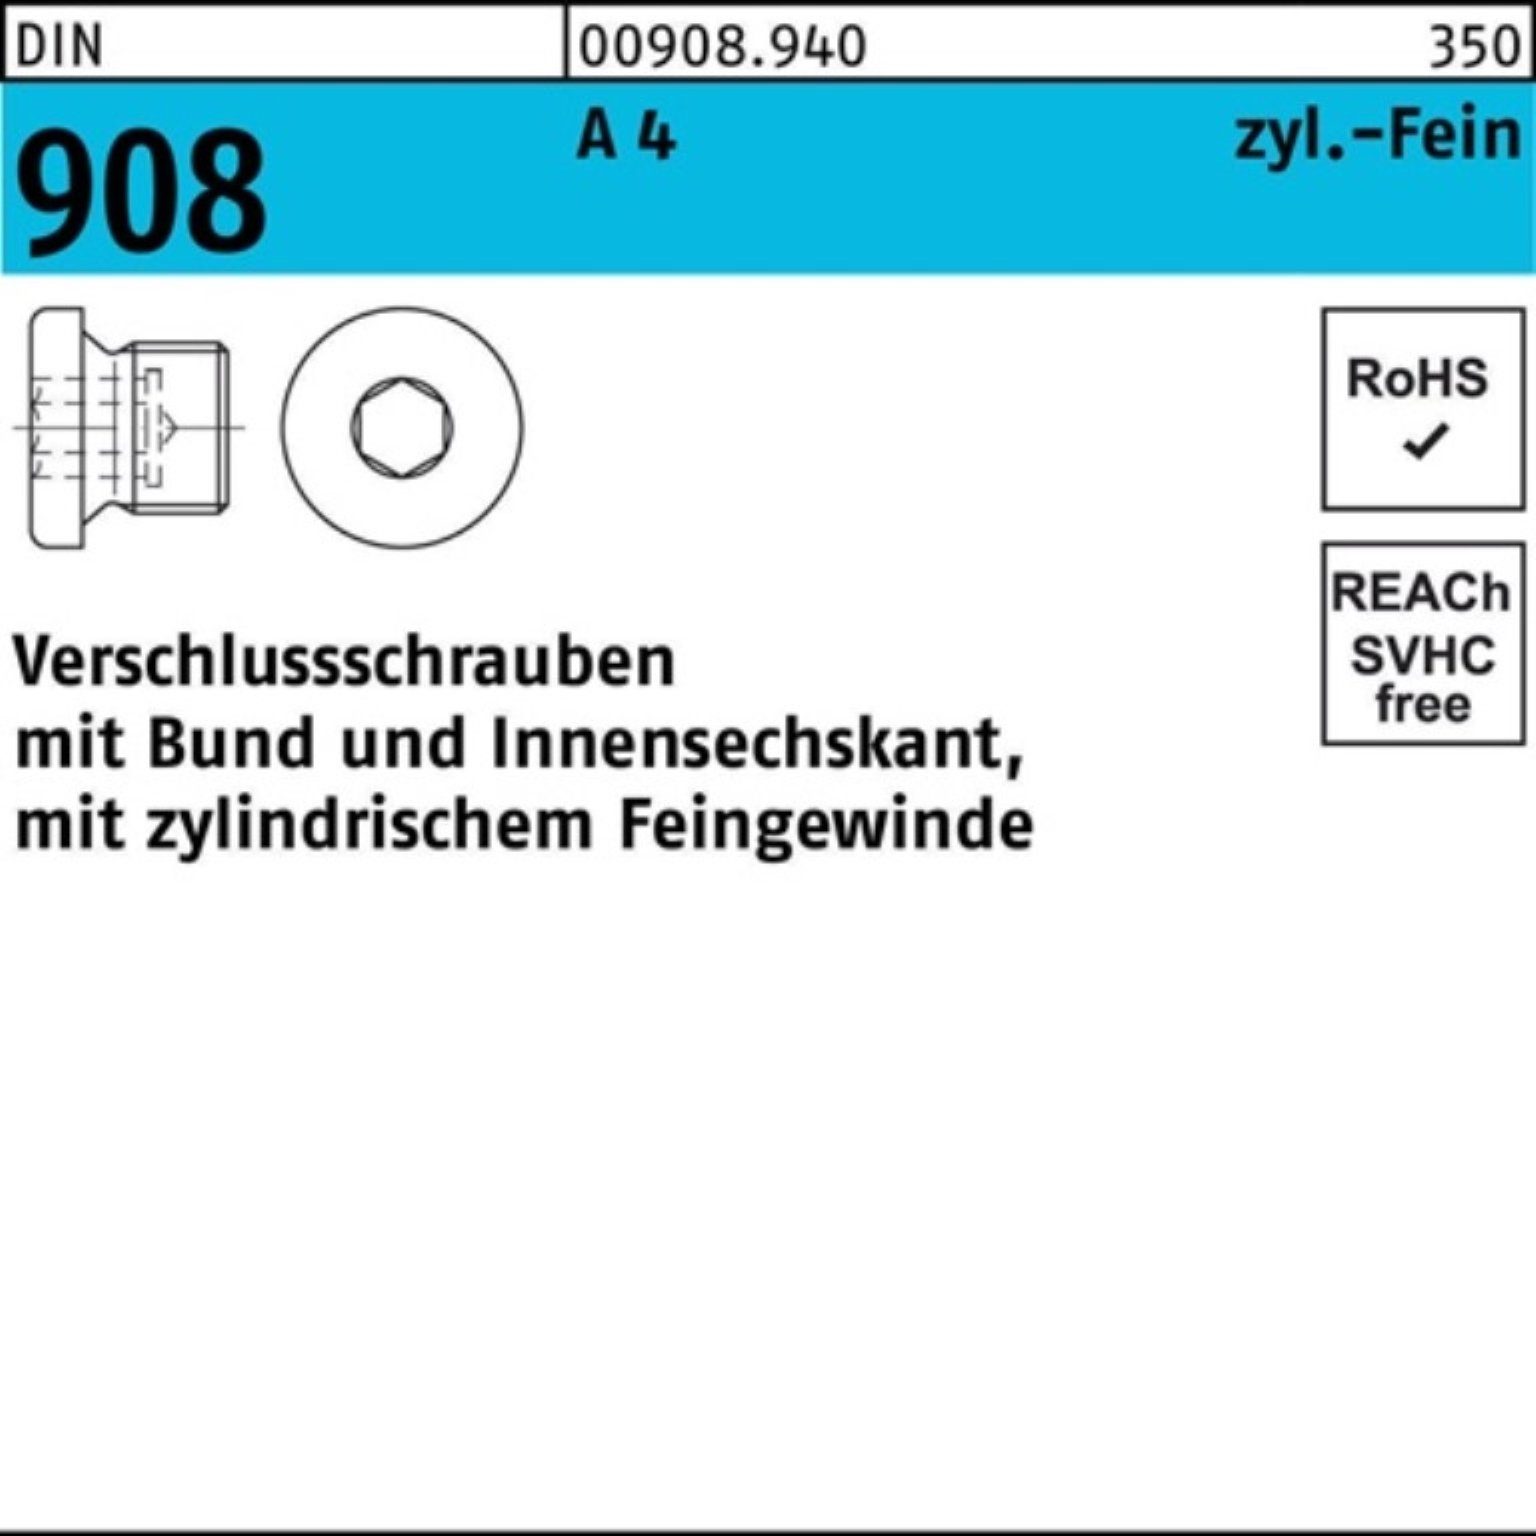 Reyher Schraube 100er Pack Verschlußschraube DIN 908 Bund/Innen-6kt M18x 1,5 A 4 100